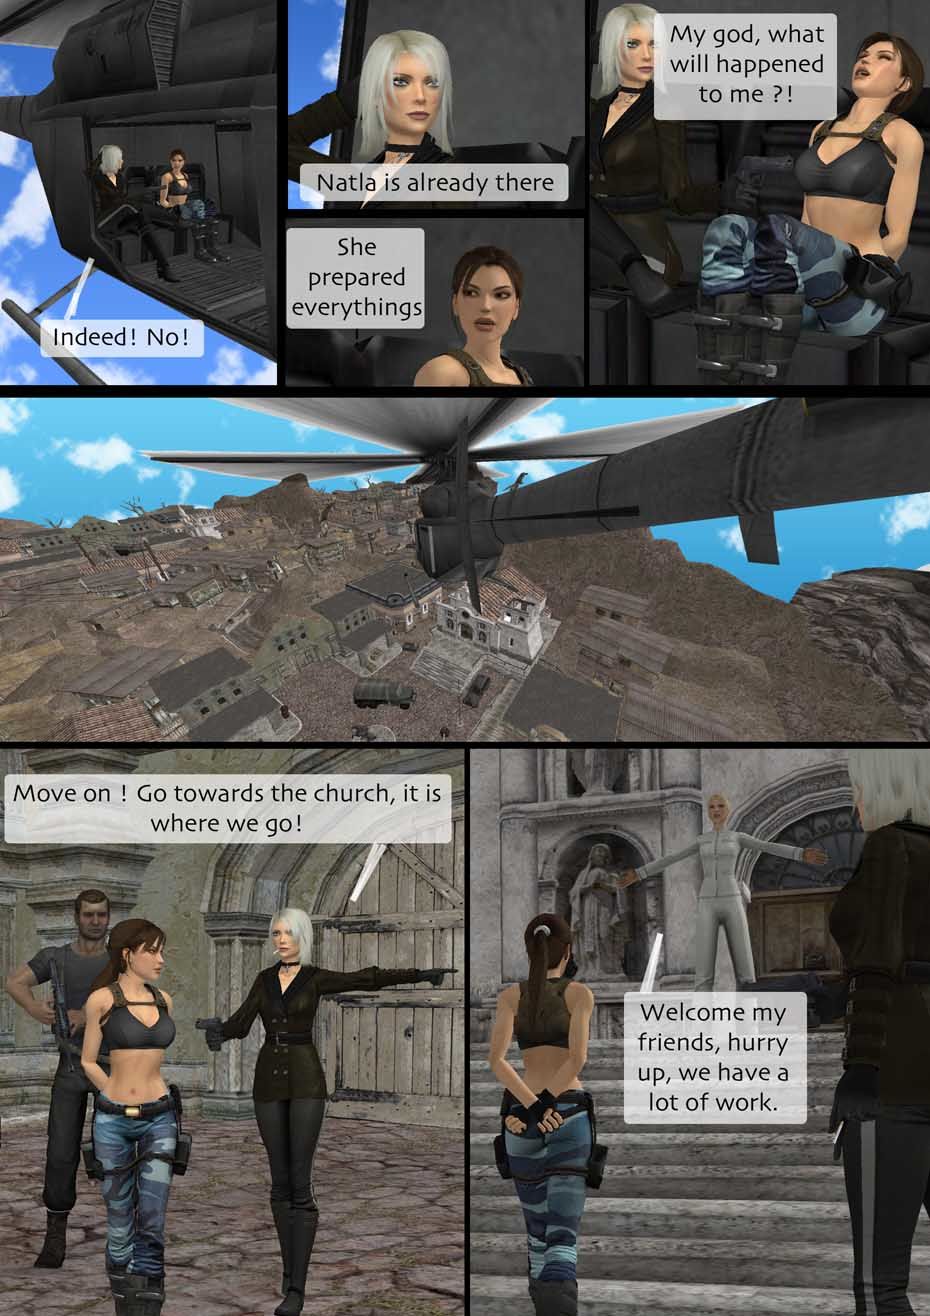 Tomb Raider Endgame (no text) - part 2